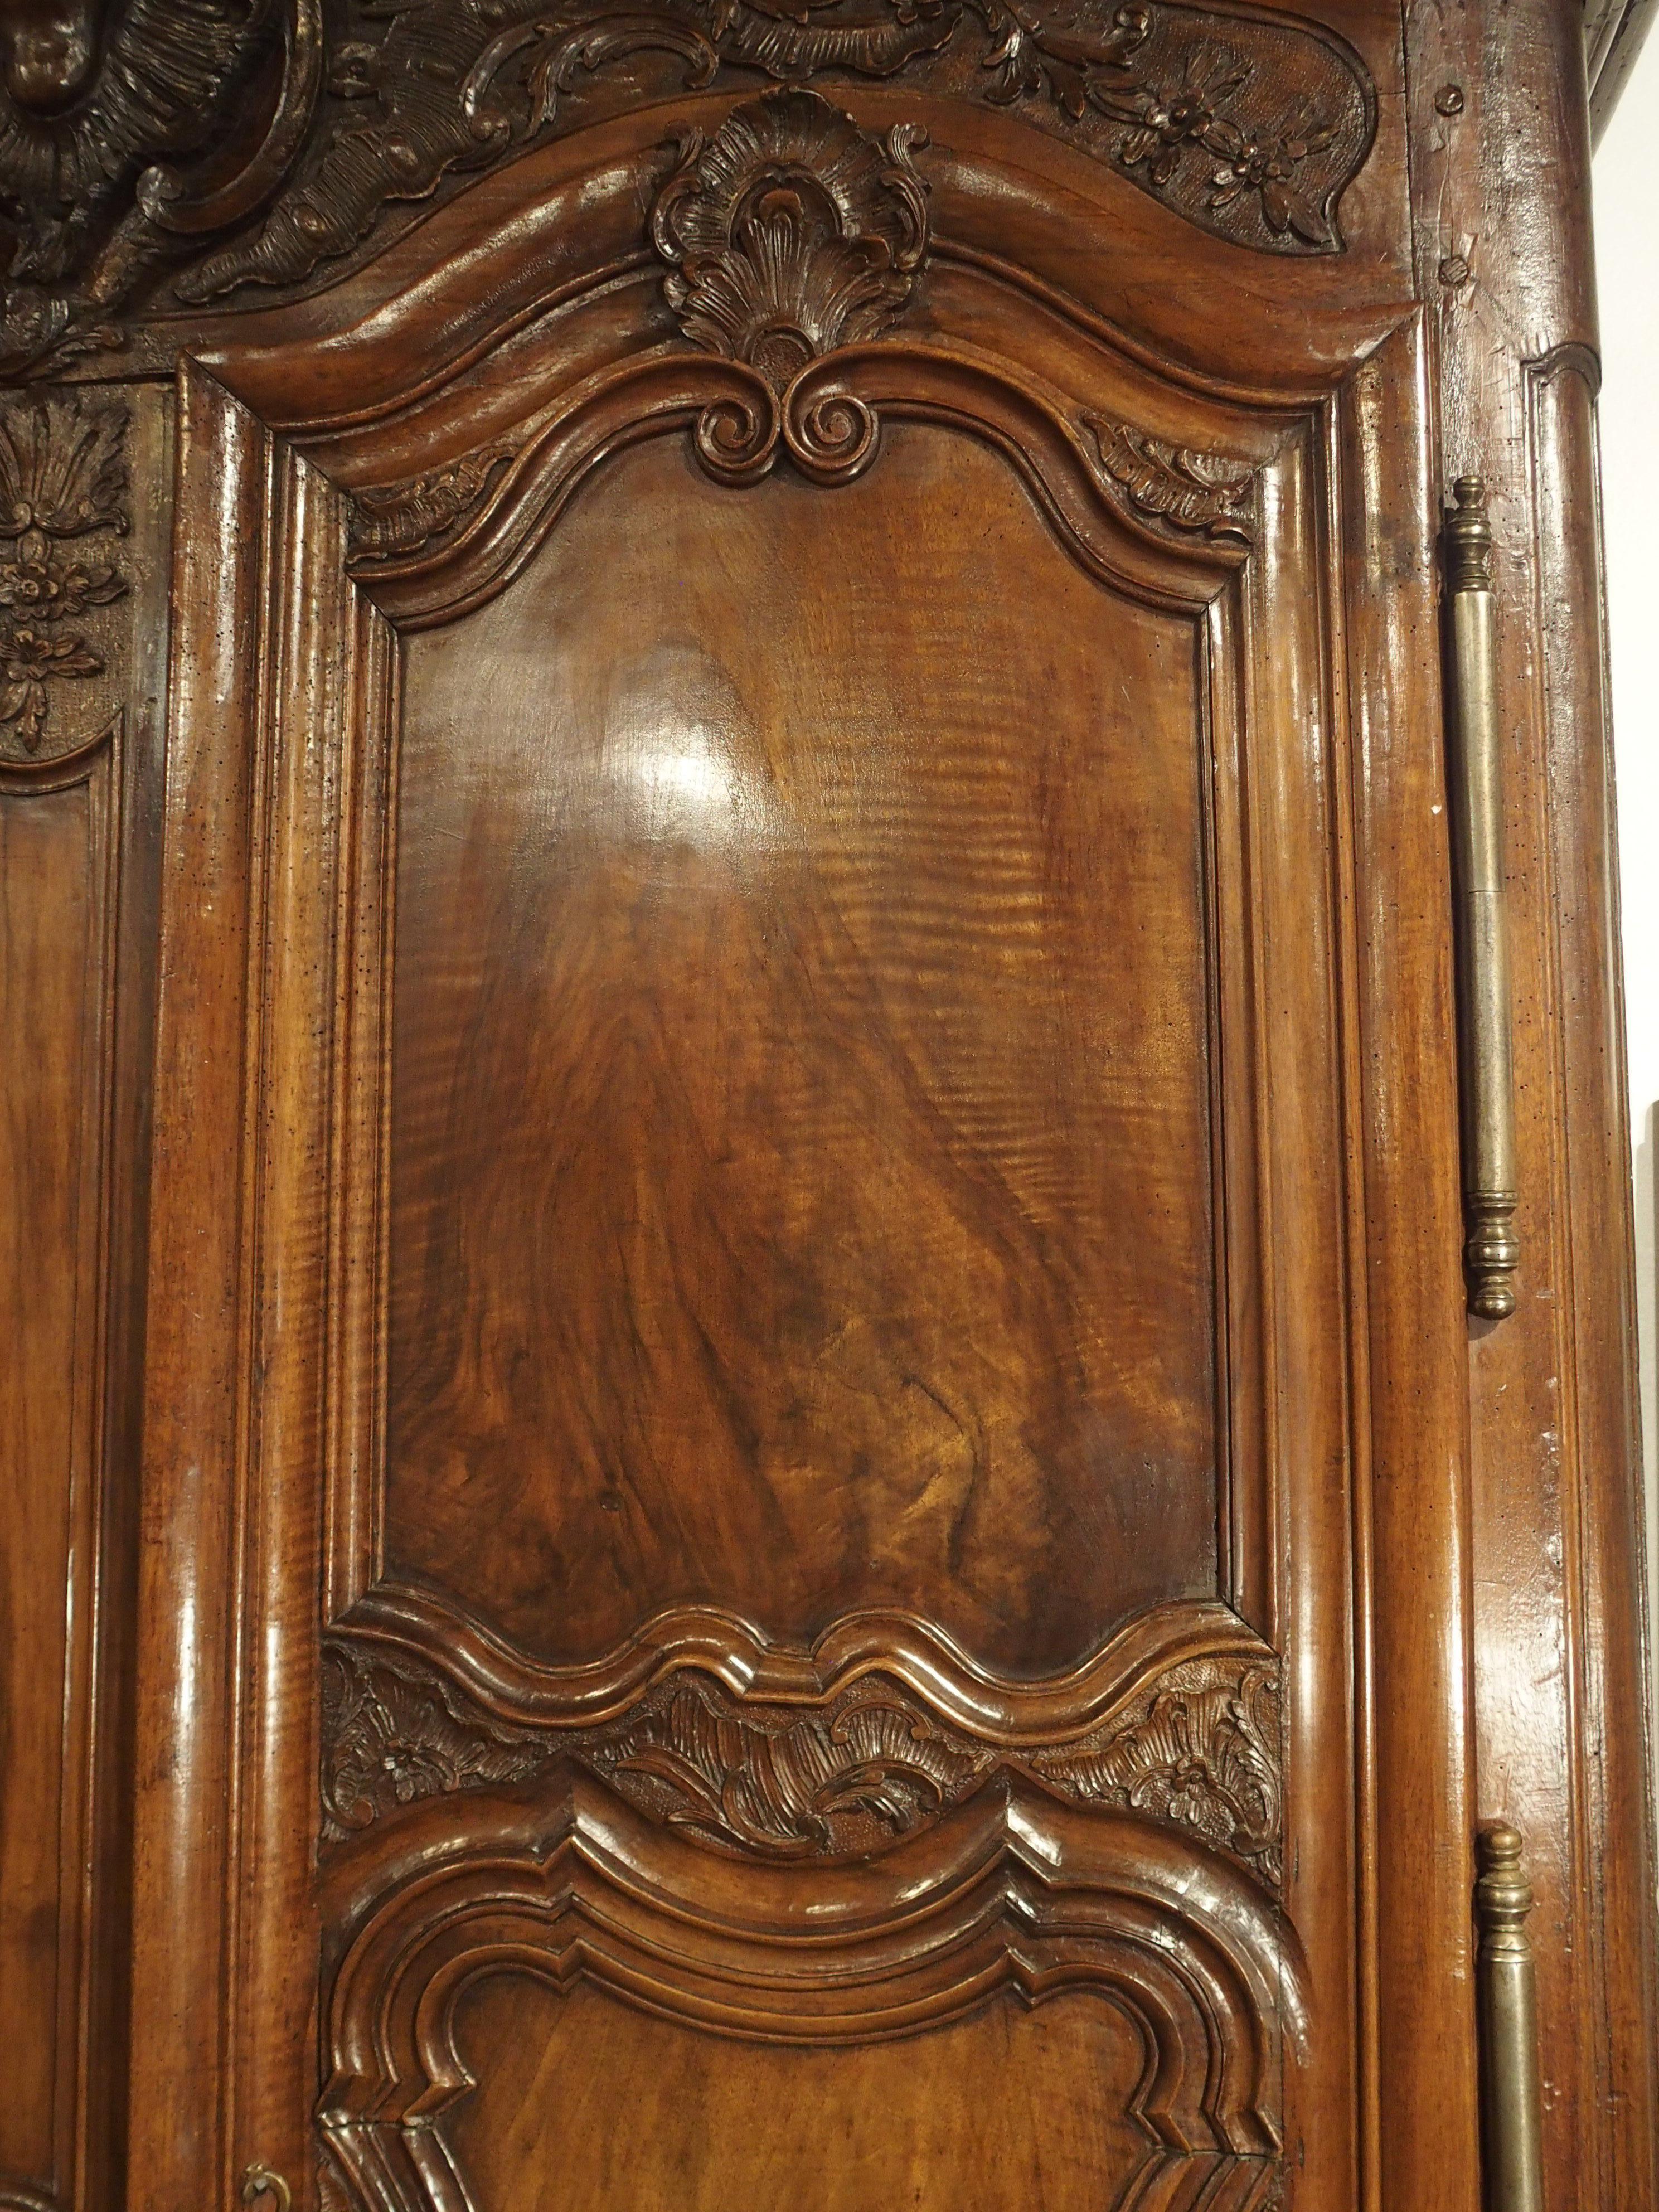 Cette fantastique armoire en noyer a été sculptée à la main à Lyon (sud-est de la France) dans les années 1700. les armoires lyonnaises du XVIIIe siècle sont très particulières, grâce aux techniques utilisées par les ébénistes pour que leurs meubles